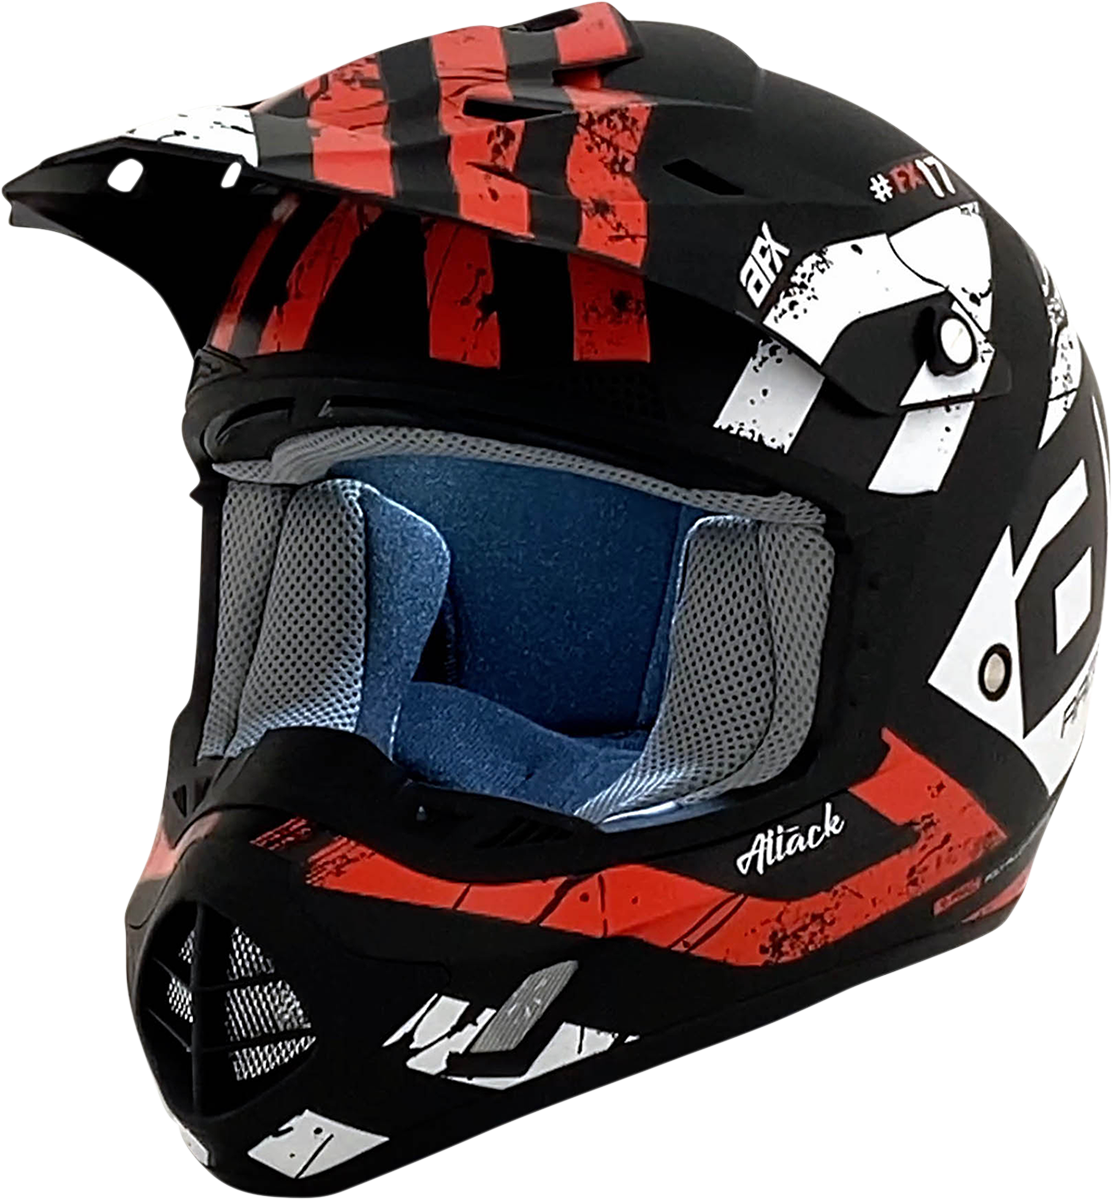 AFX FX-17 Helmet - Attack - Matte Black/Red - 4XL 0110-7640